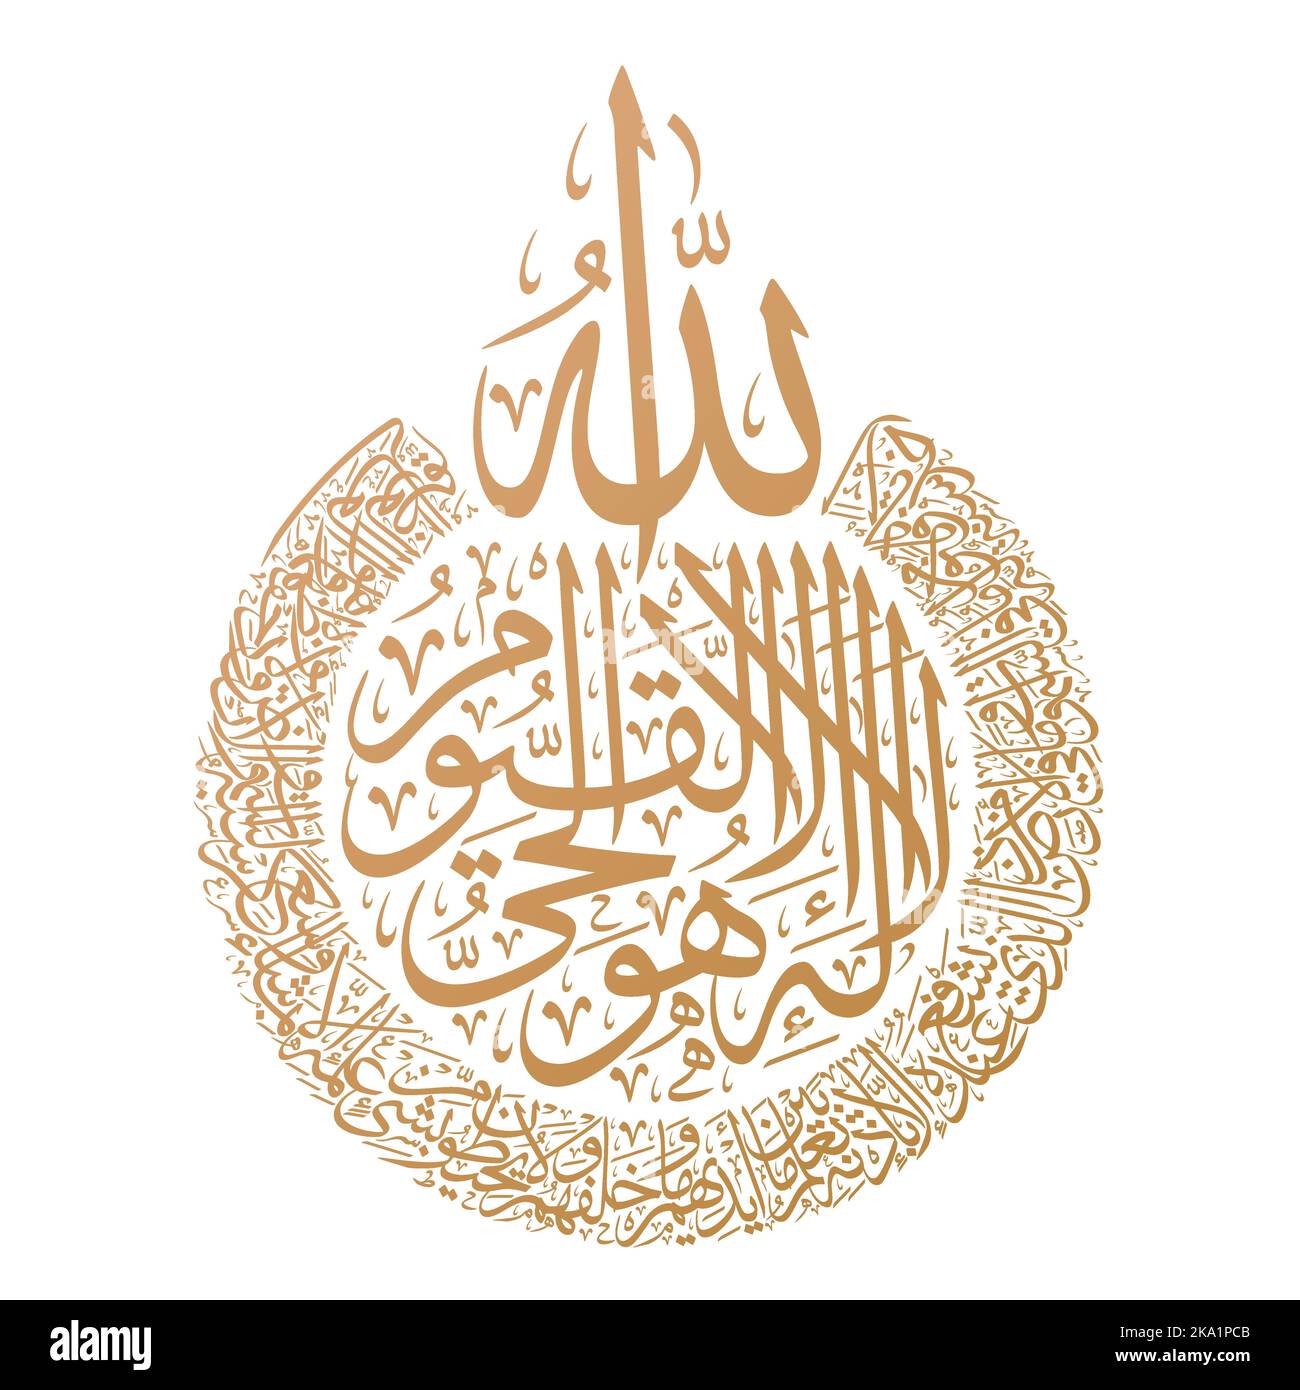 Calligrafia araba e islamica di Ayat al Kursi (Ayah 255 di Surah al-Baqarah). Conosciuto anche come Ayat ul Kursi, 'il Trono di Allah nel Corano' Illustrazione Vettoriale